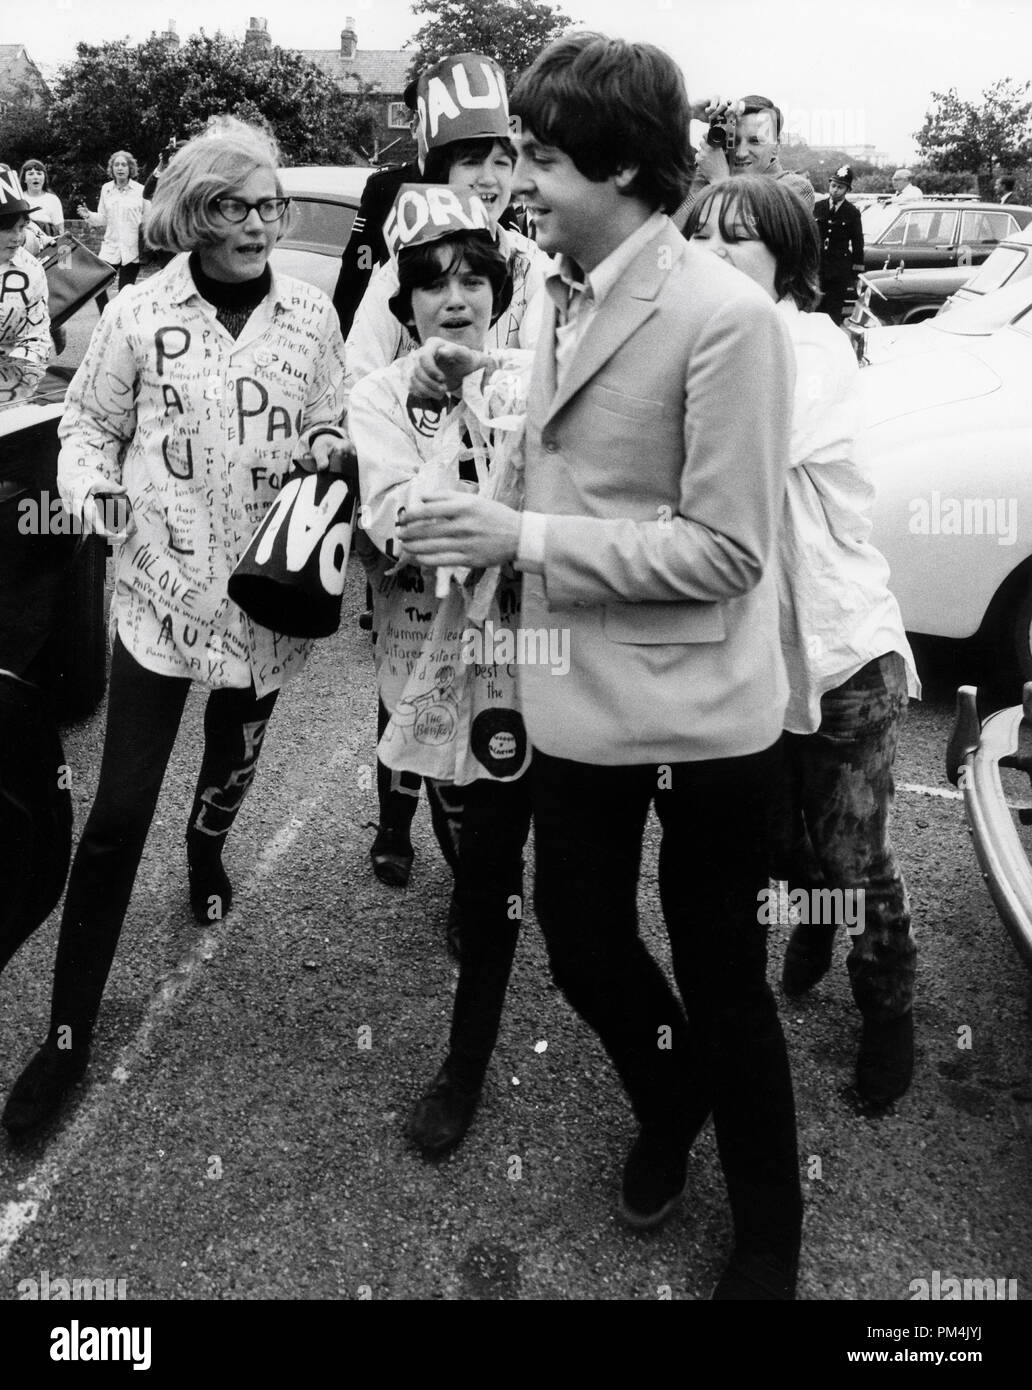 Paul McCartney Beatles assiégée par des fans,1966. Référence # 1013 105 THA © CCR /Le Hollywood Archive - Tous droits réservés. Banque D'Images